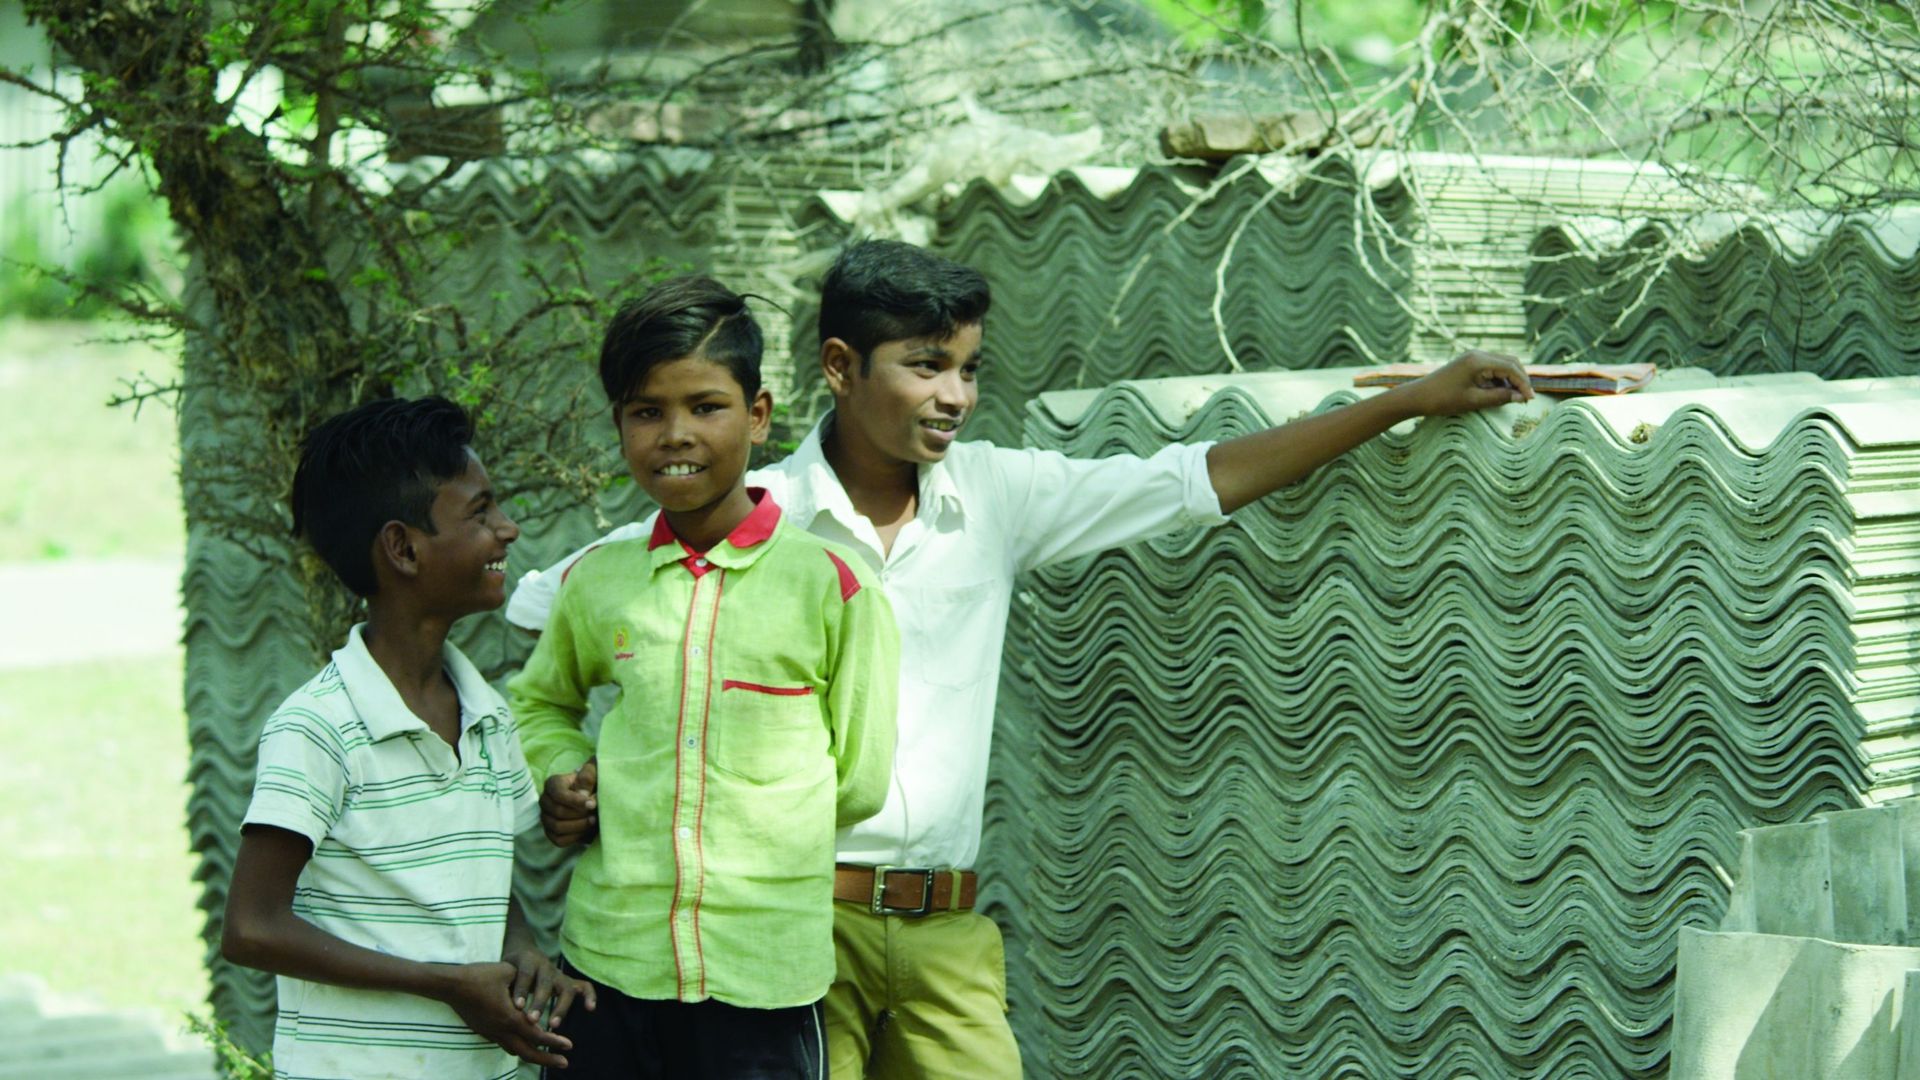 Dans un village en Inde - Extrait de "Le souffle volé"